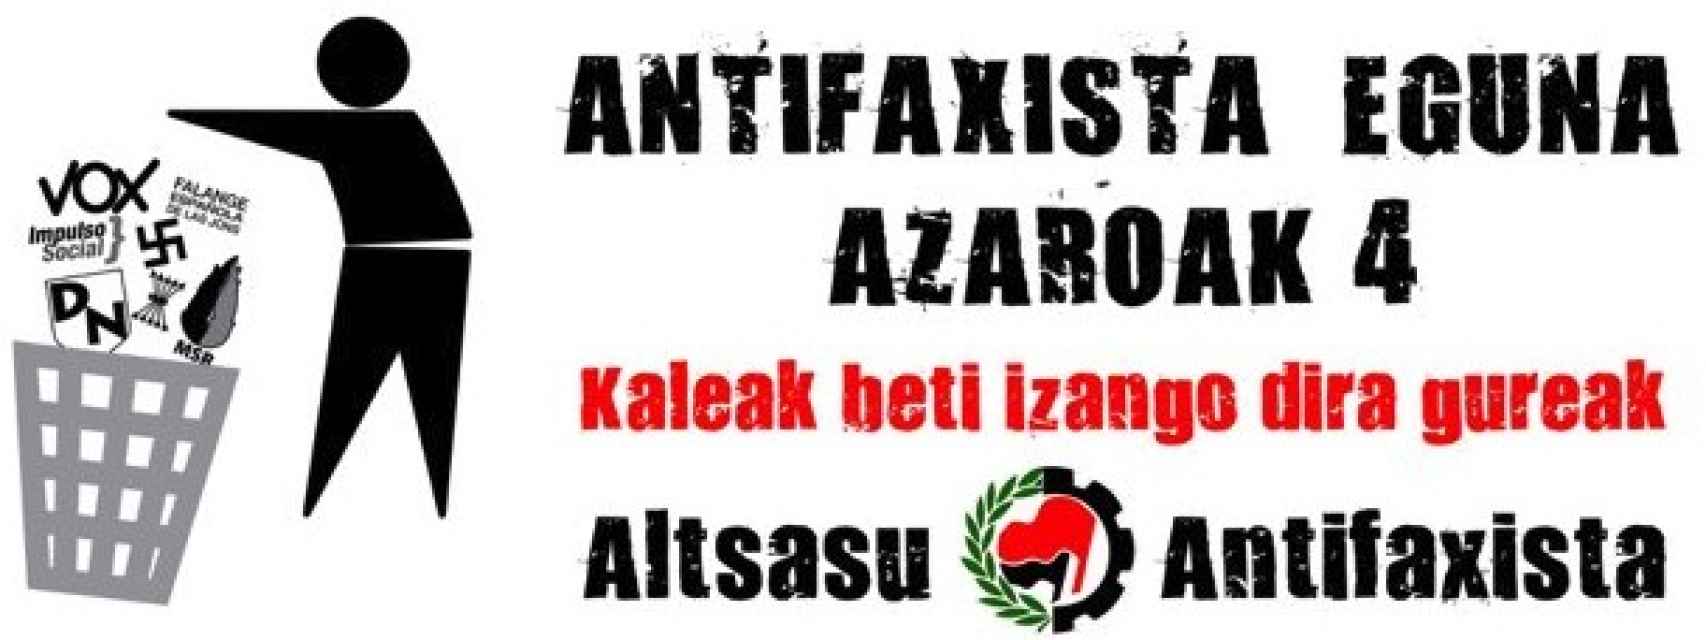 Mensaje difundido en redes por Sare Antifaxista. Las calles siempre serán nuestras, dice en euskera.